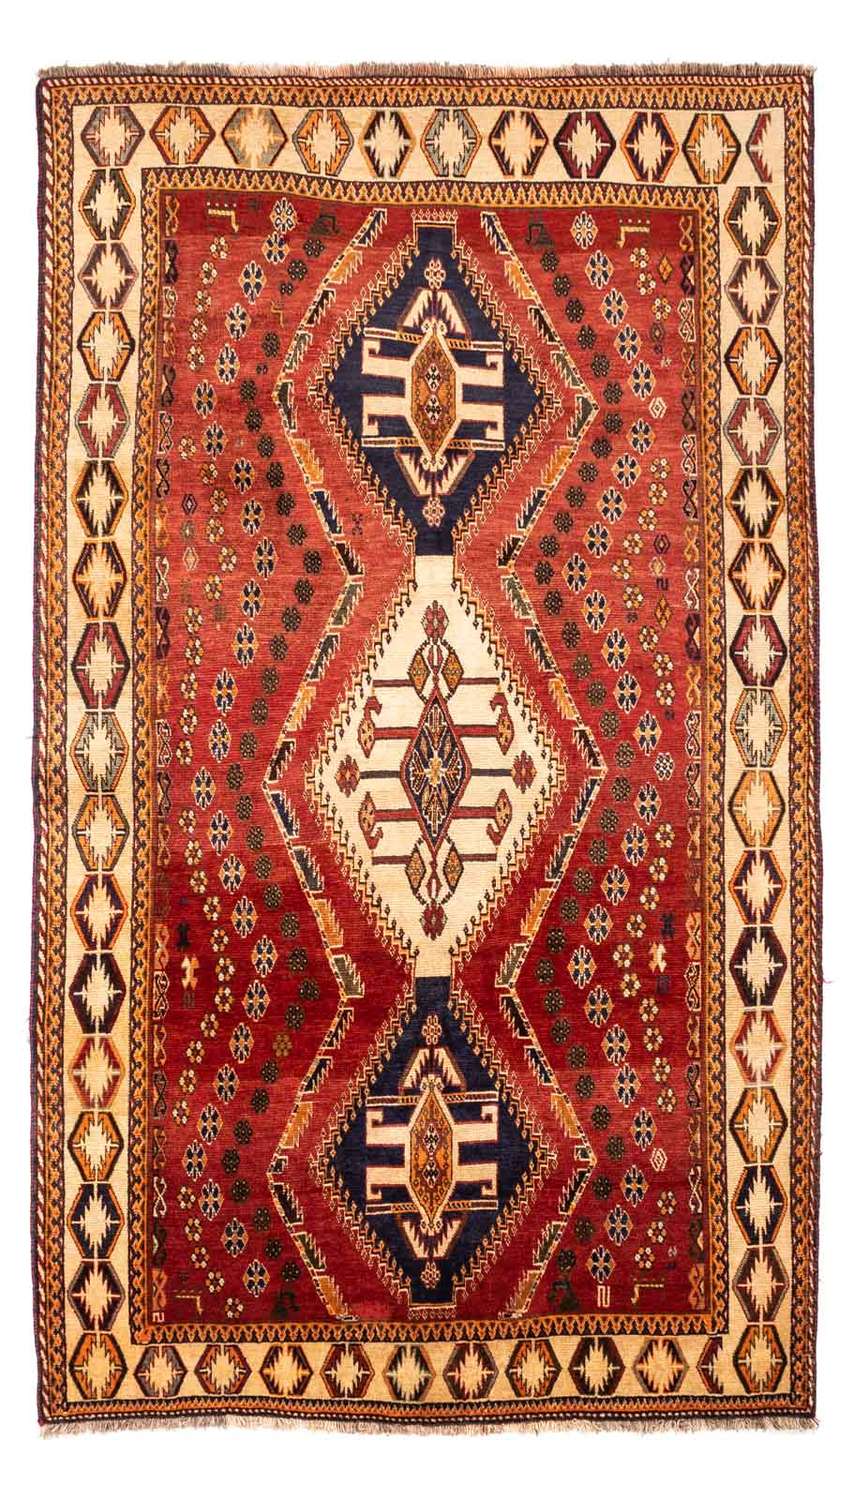 Alfombra persa - Nómada - 270 x 152 cm - rojo